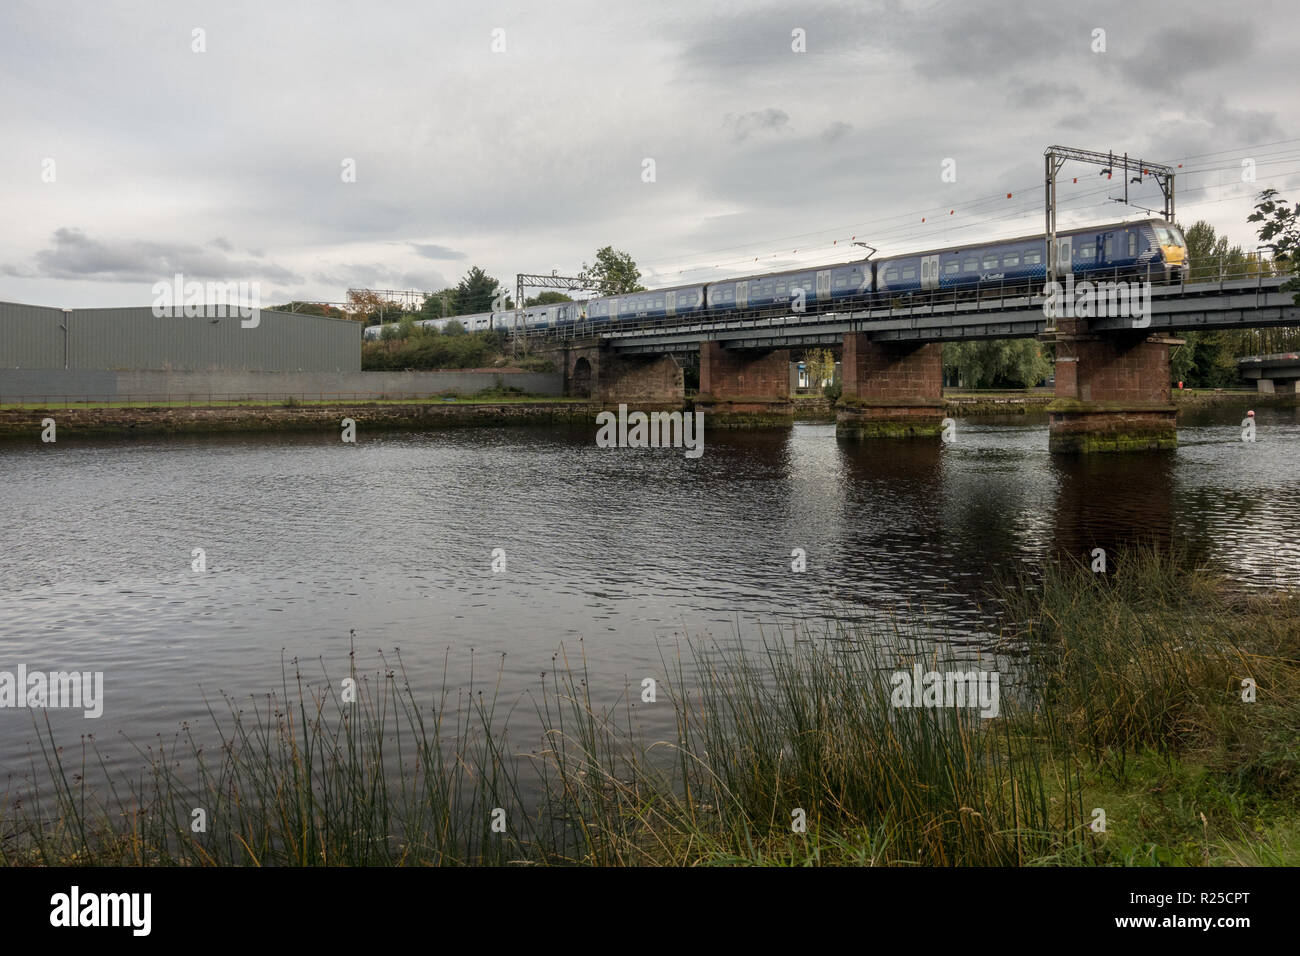 Dumbarton, Écosse, Royaume-Uni - 28 septembre 2017 : un train de voyageurs Scotrail traverse la rivière Leven à Dumbarton sur le Nord de la Clyde près de Glasgow. Banque D'Images